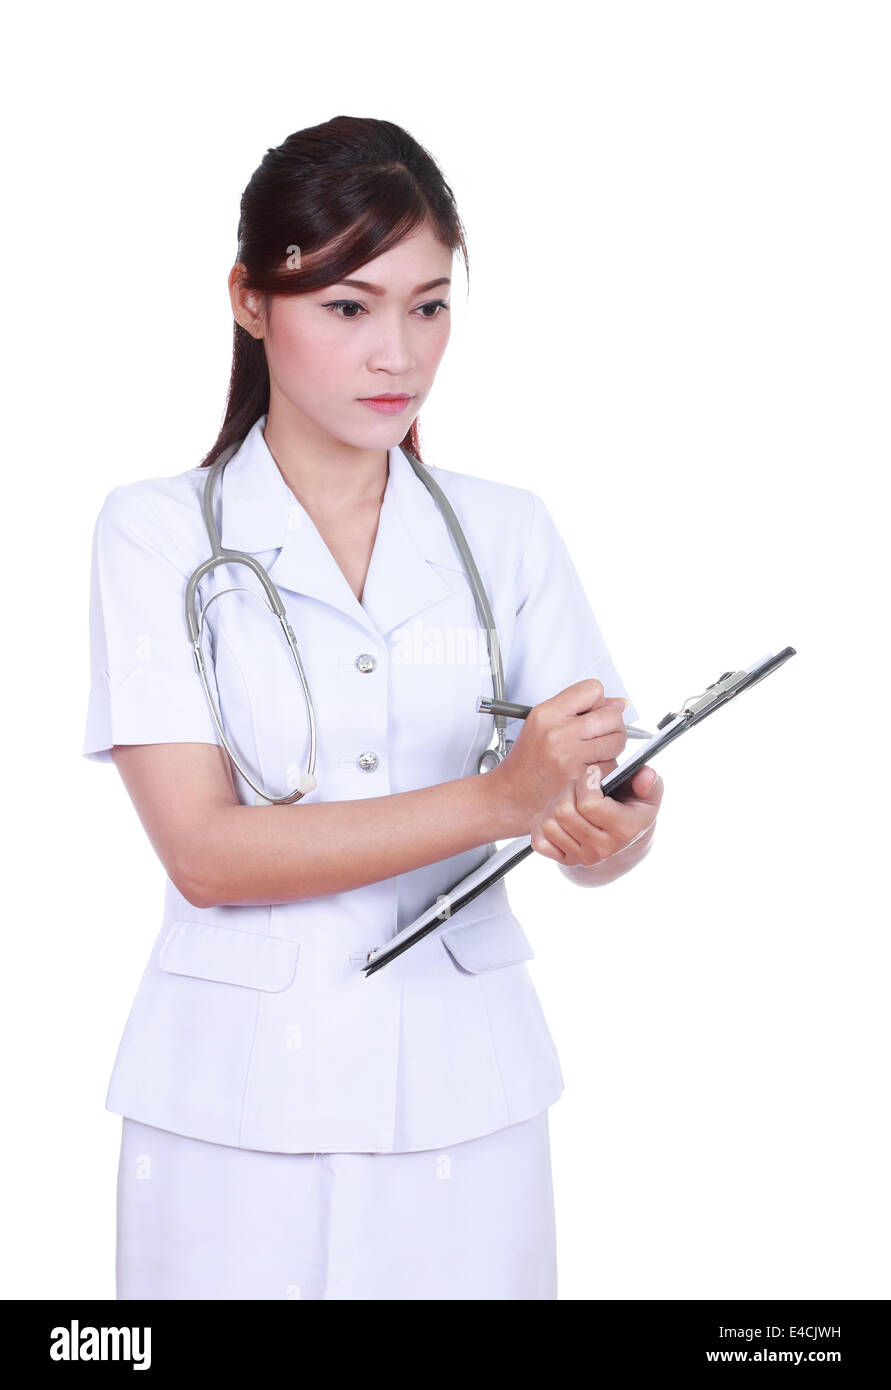 female nurse writing medical report isolated on white background Stock Photo